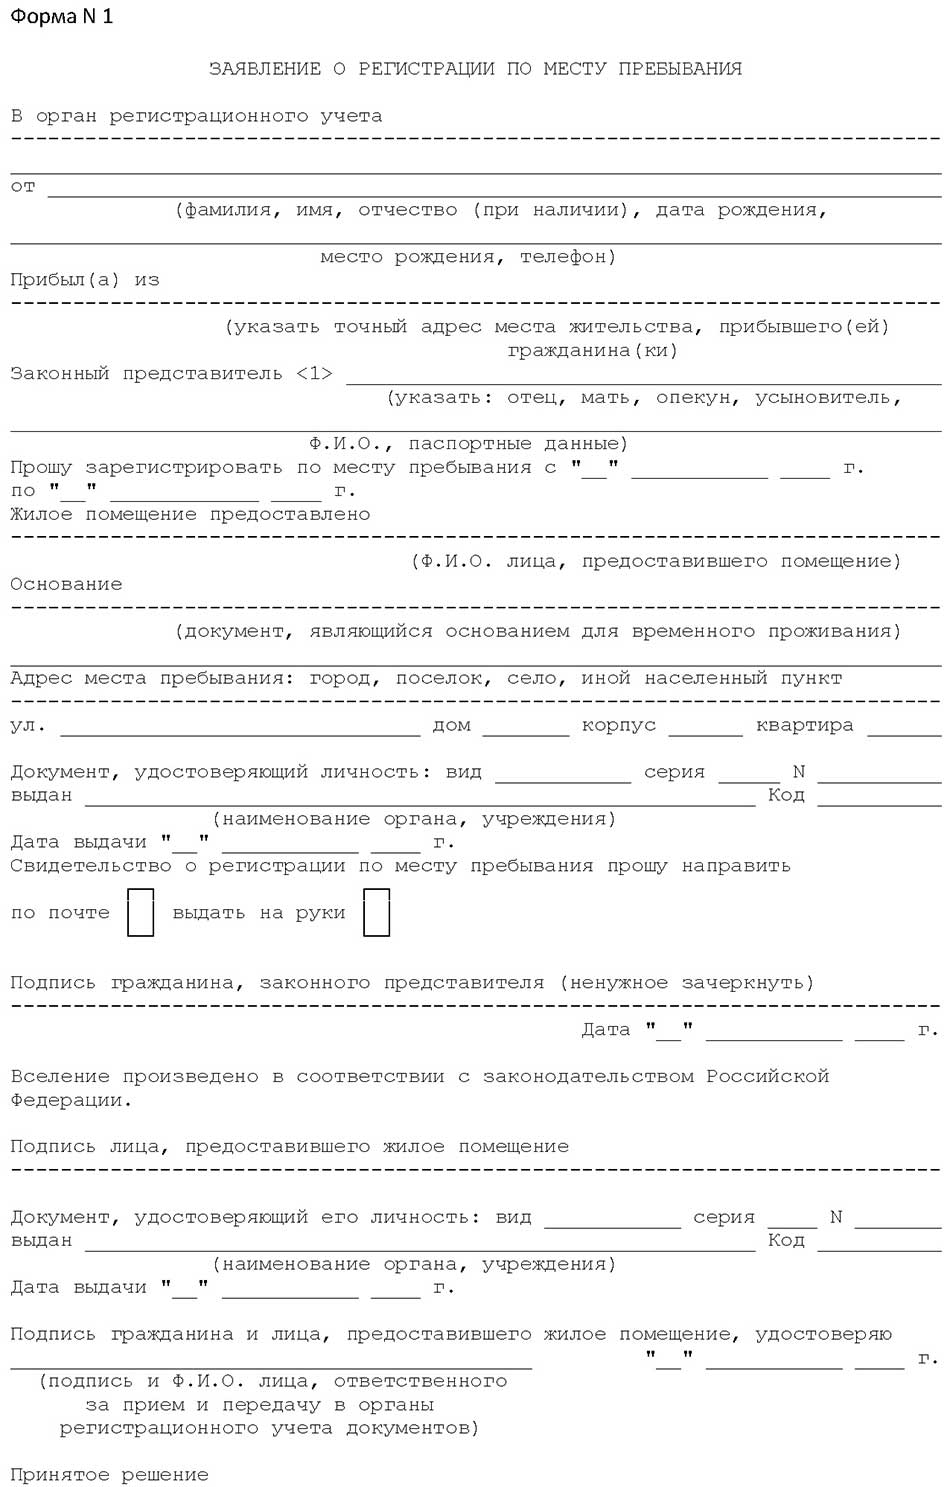 Образец бланка заявления о регистрации по месту пребывания - форма 1